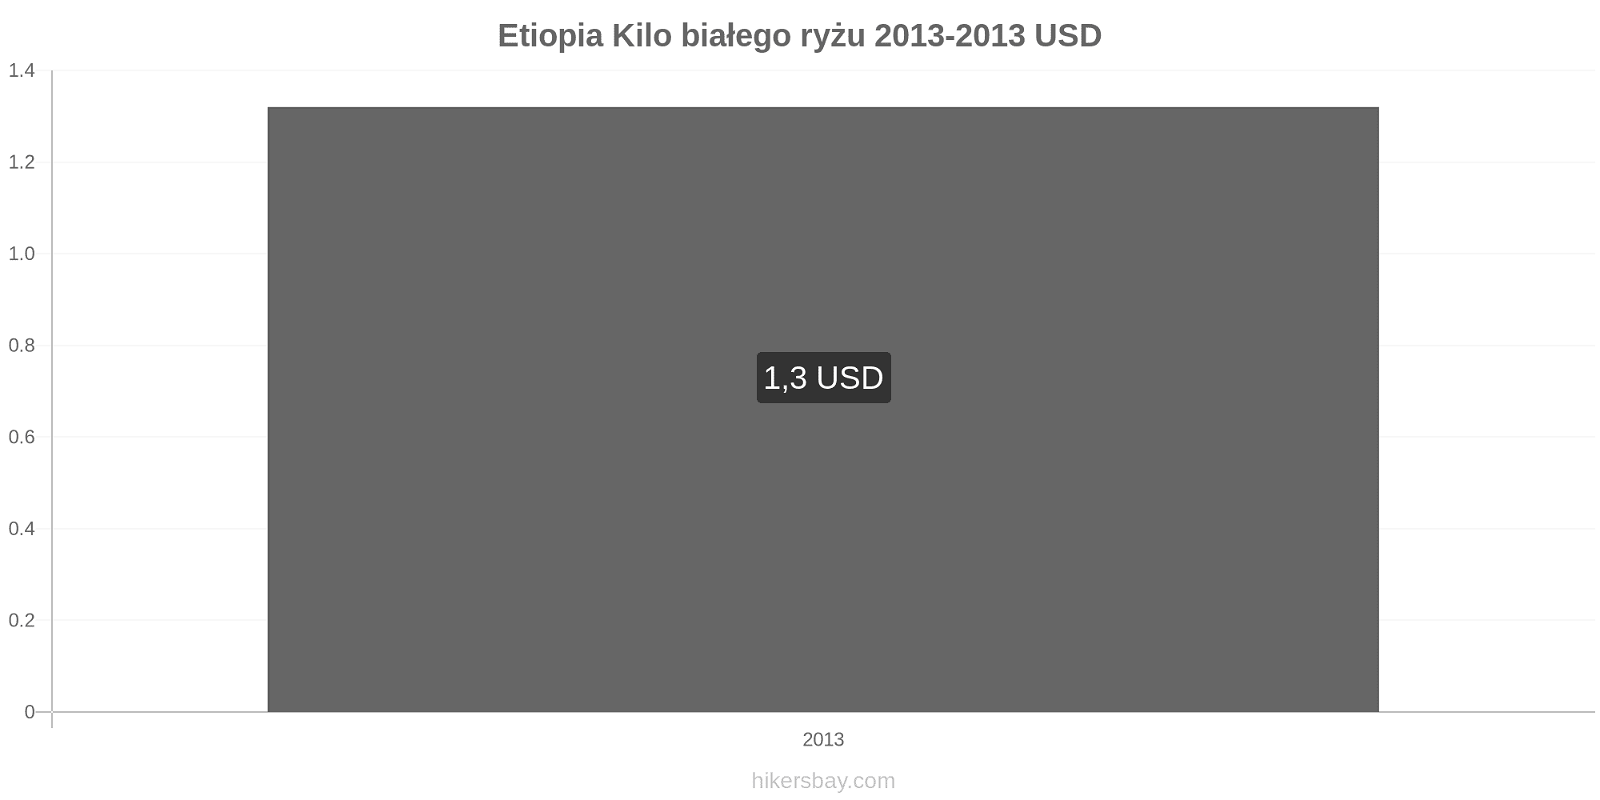 Etiopia zmiany cen Kilo białego ryżu hikersbay.com